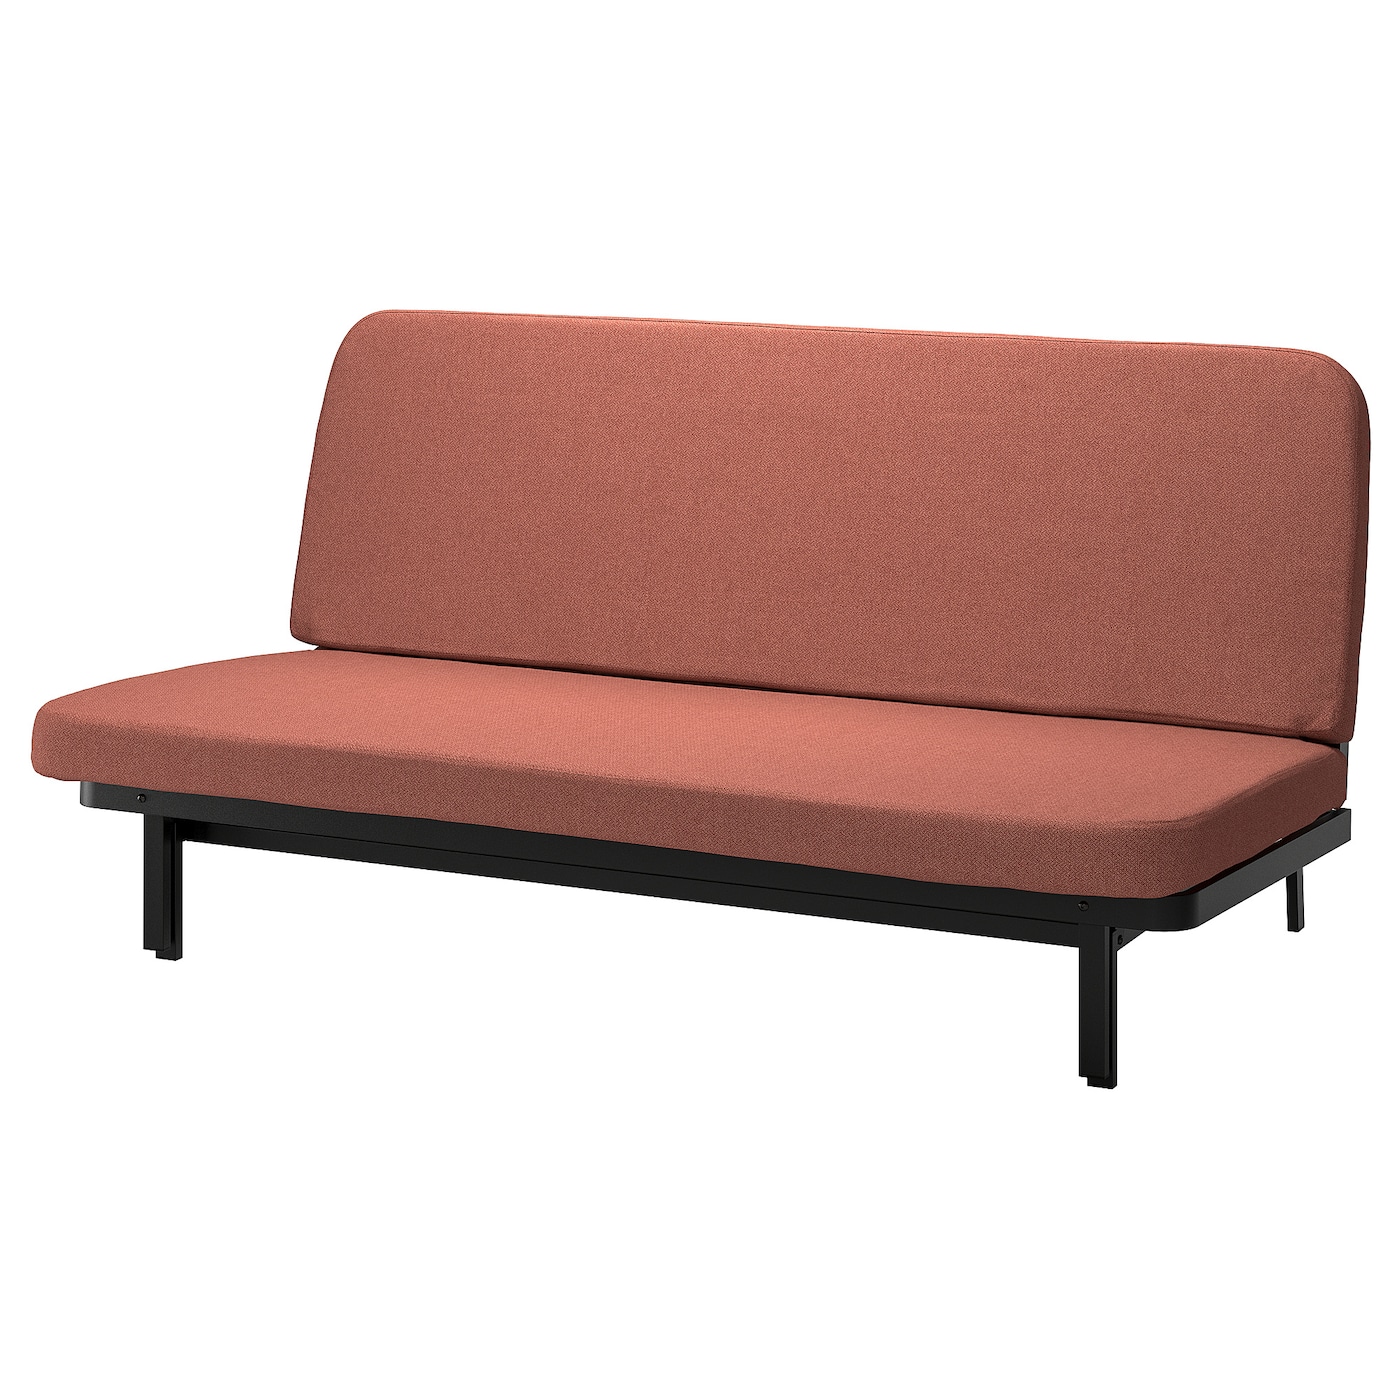 NYHAMN 3-местный диван-кровать, поролоновый матрас в комплекте/Скартофта красный/коричневый IKEA диван кровать малютка кордрой красный